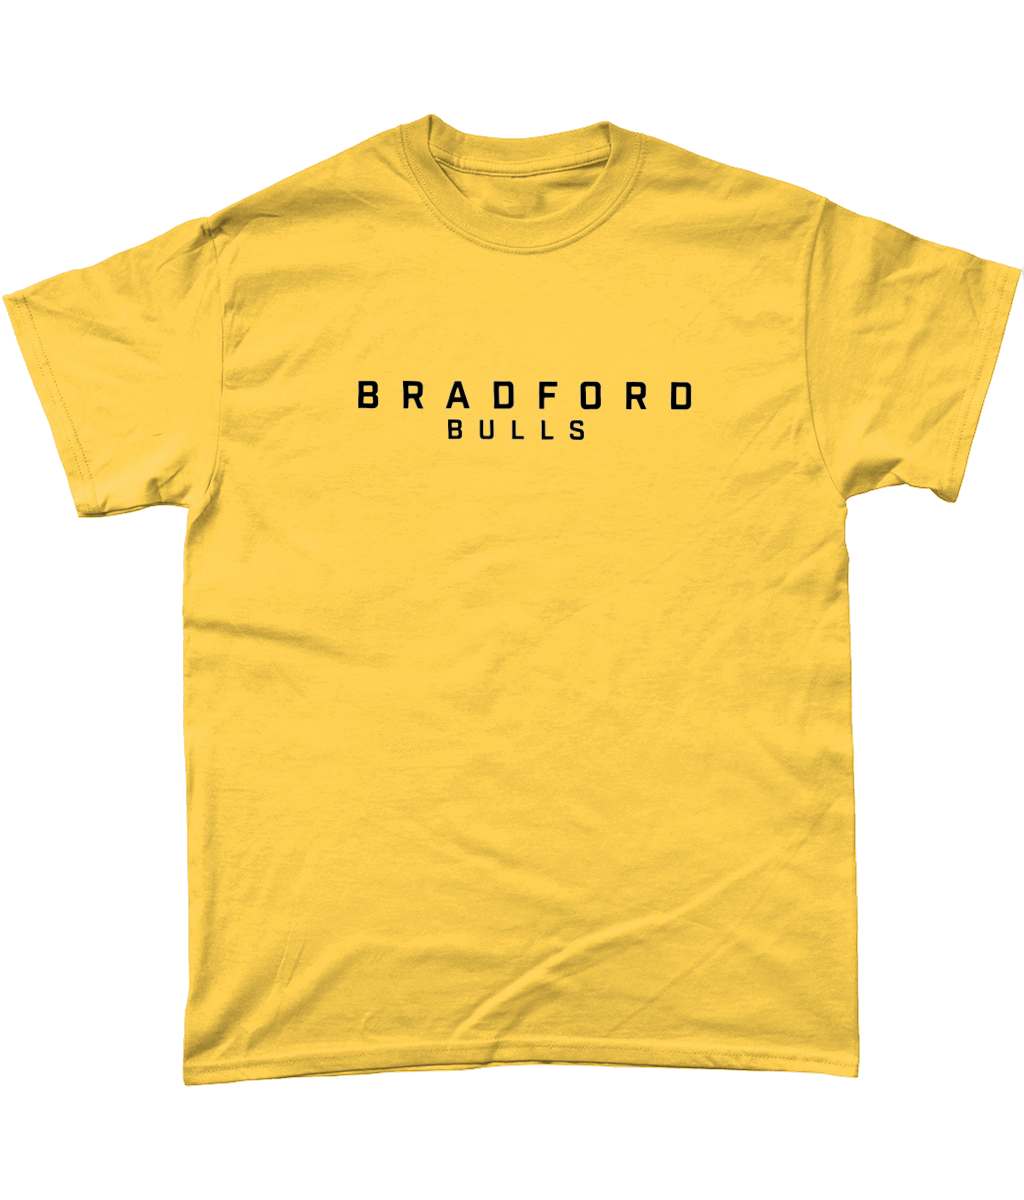 Bradford Bulls Text T-Shirt in Amber